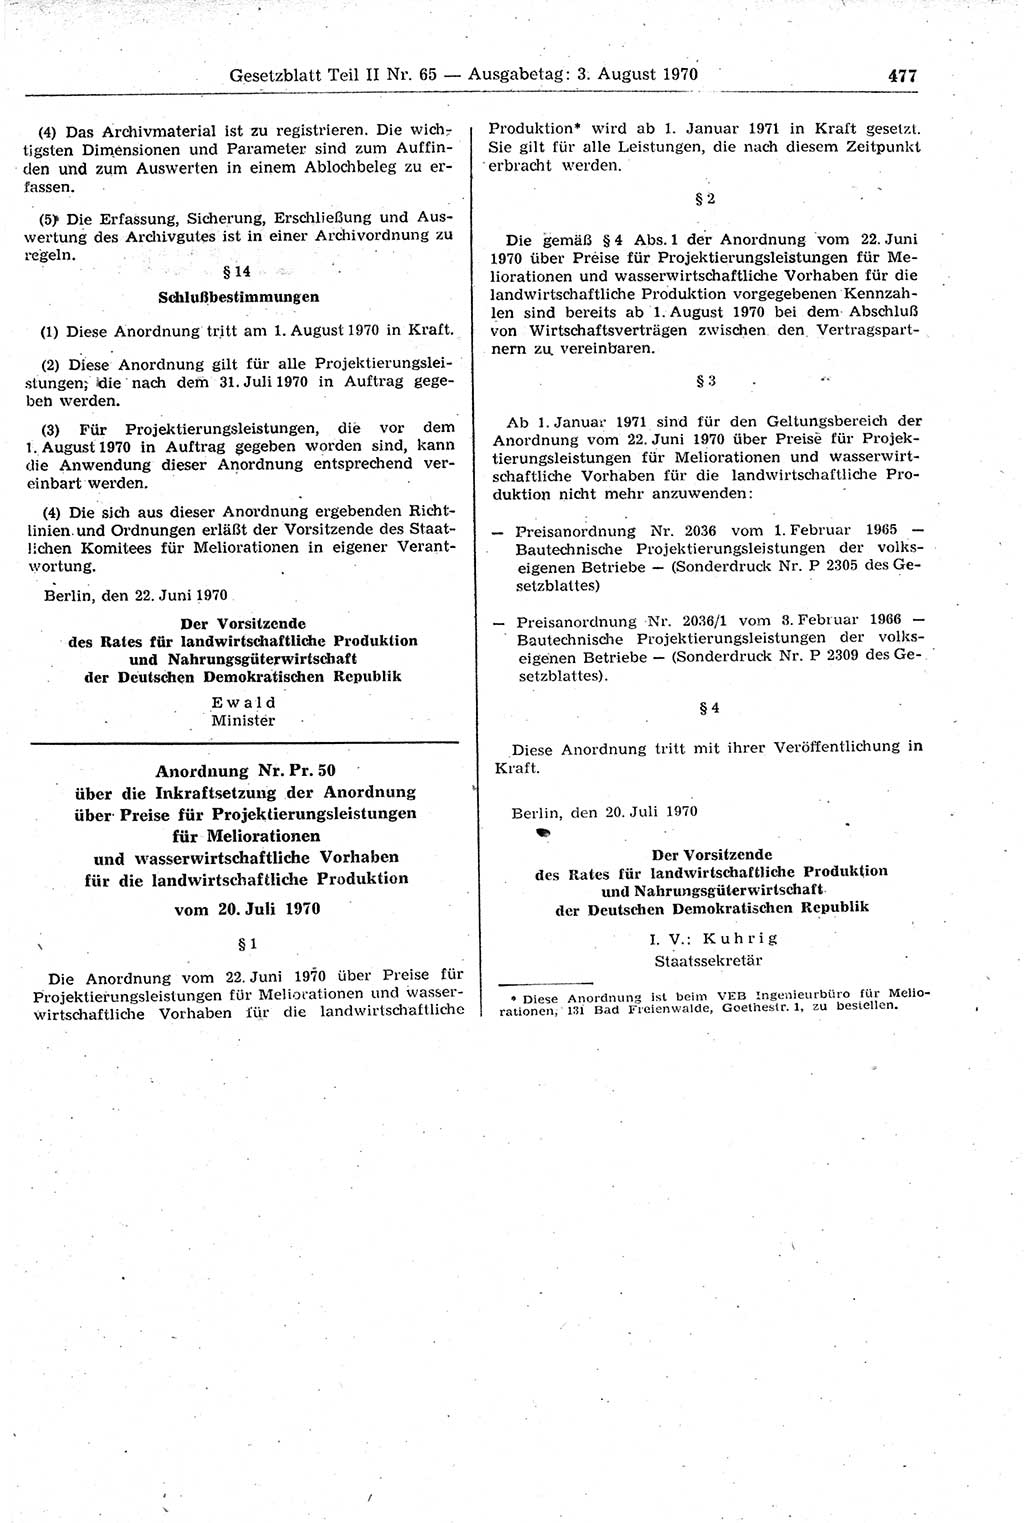 Gesetzblatt (GBl.) der Deutschen Demokratischen Republik (DDR) Teil ⅠⅠ 1970, Seite 477 (GBl. DDR ⅠⅠ 1970, S. 477)